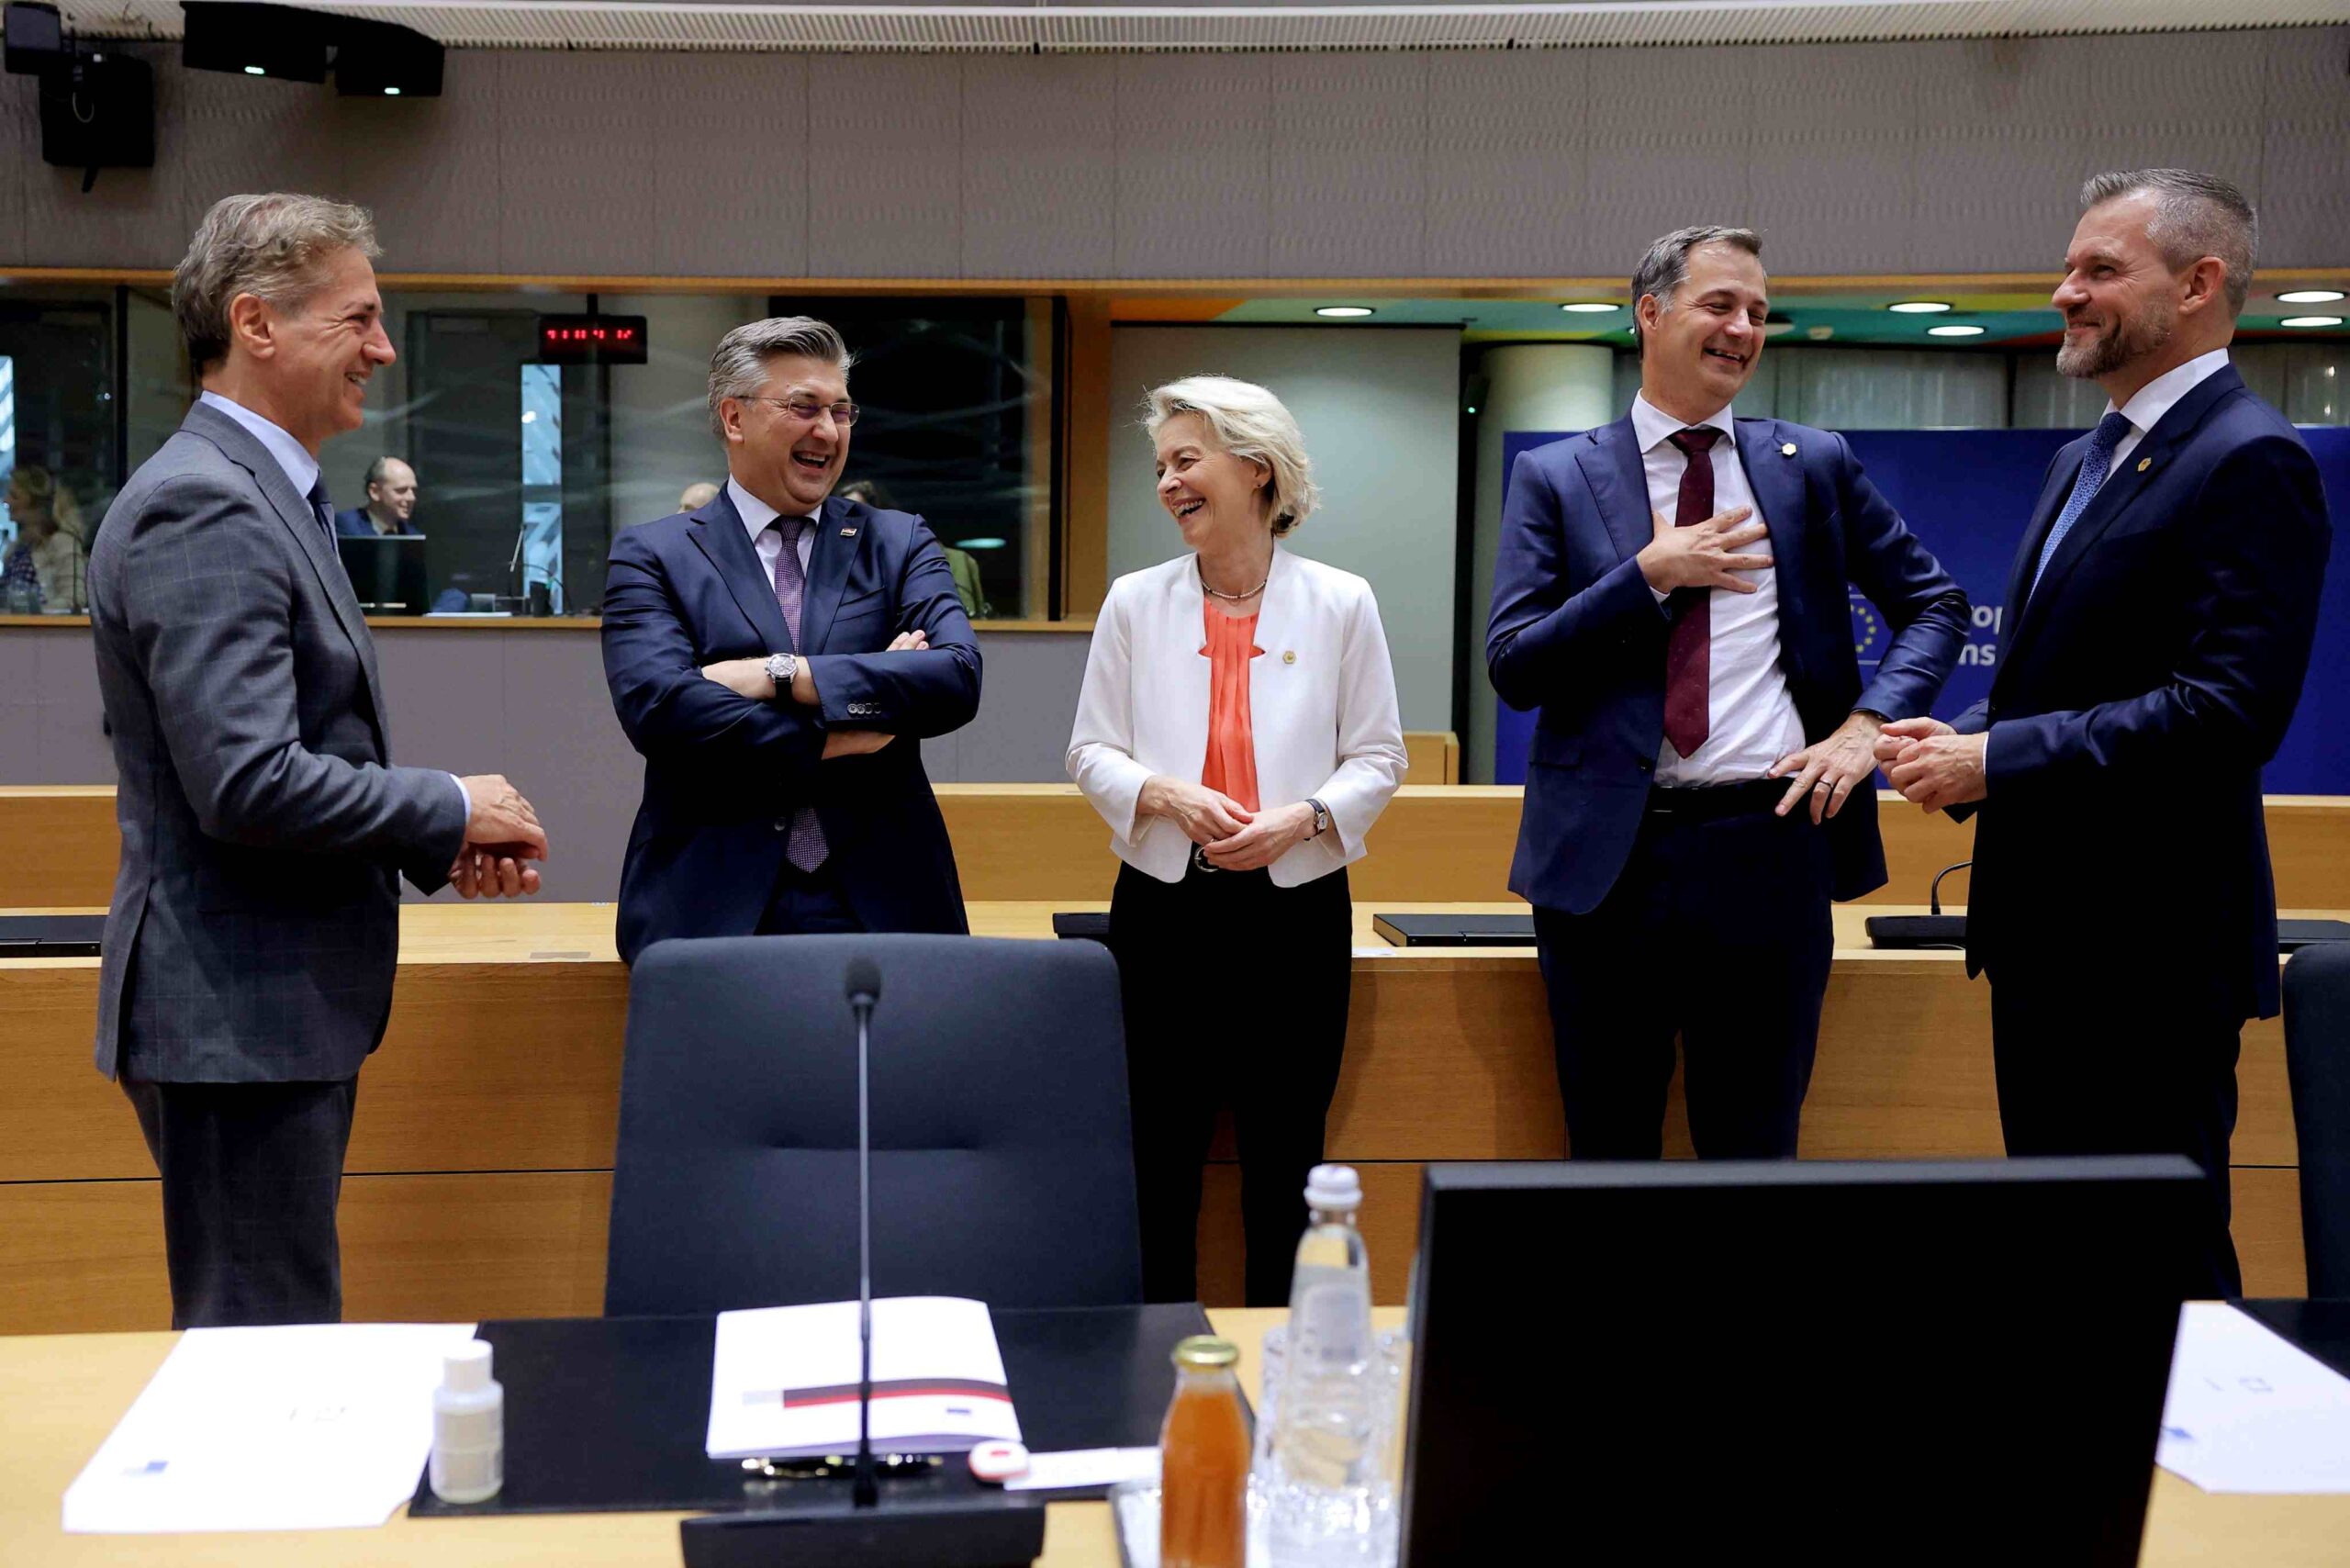 Neformalna večerja z večurno zamudo v Bruslju – Golob podpira Ursulo, Janša pa nasprotuje ponovitvi koalicije EPP z levosredinskimi strankami